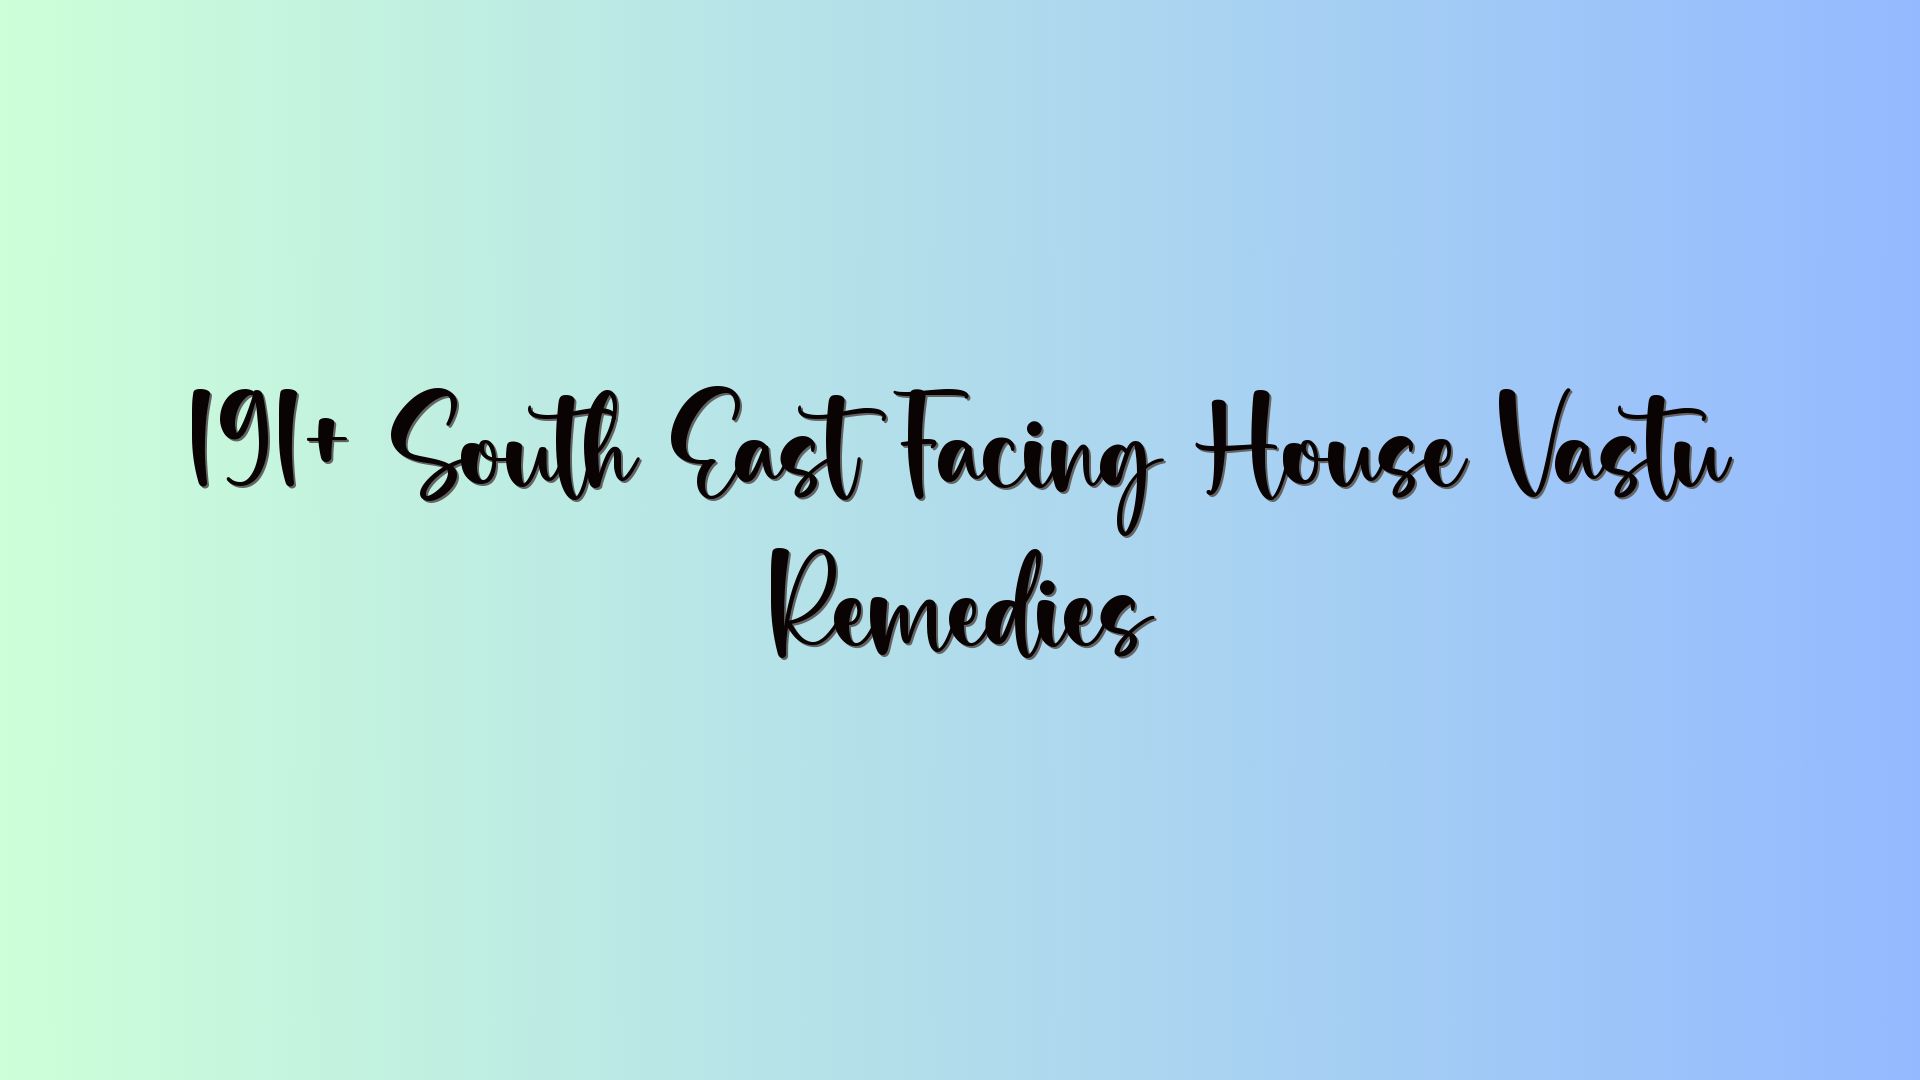 191+ South East Facing House Vastu Remedies